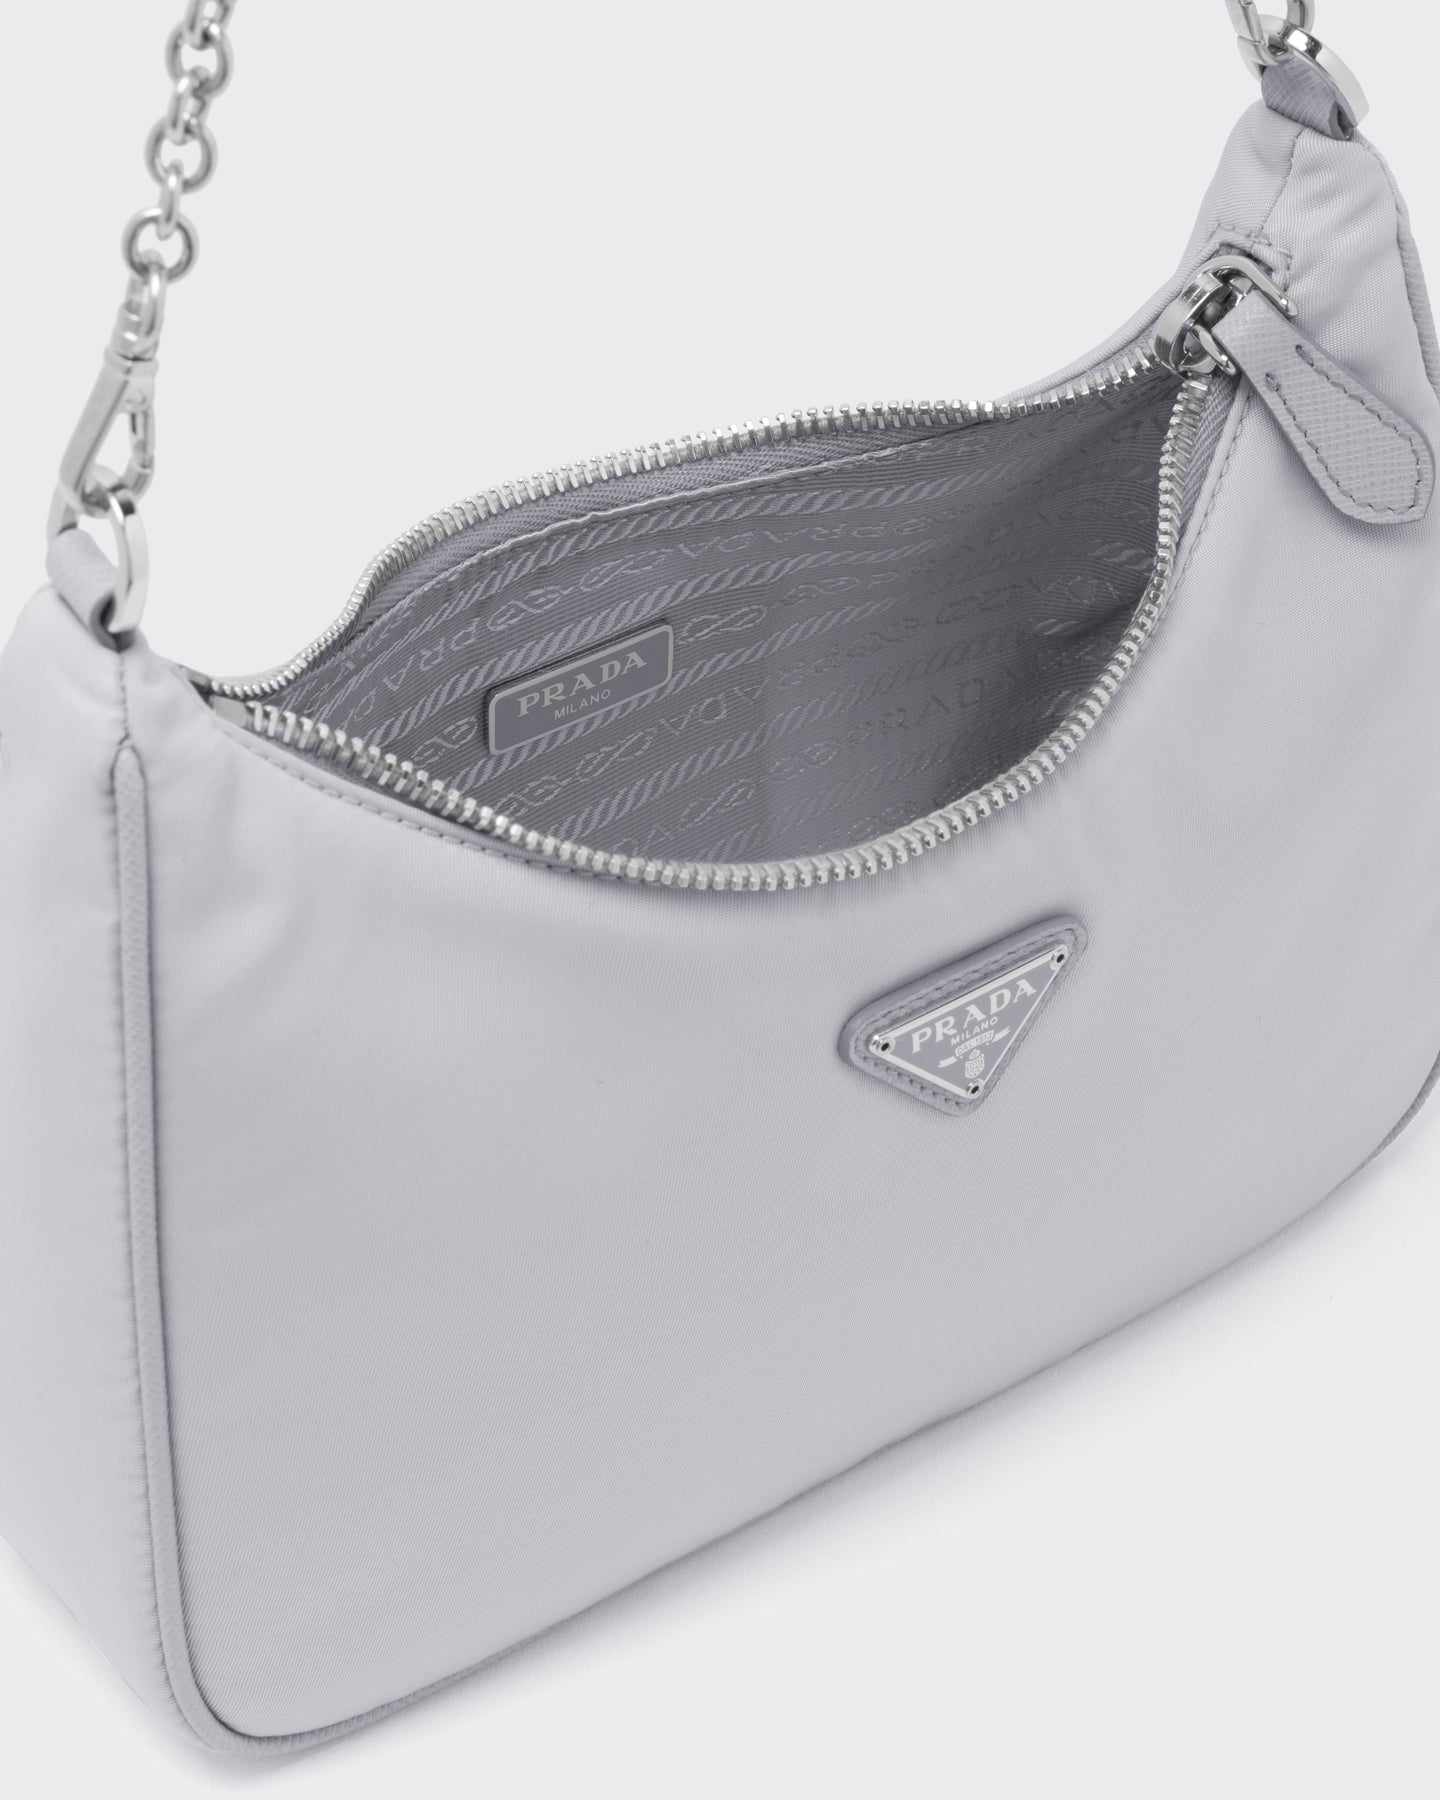 Prada Re-Edition 2005 Handbag 383693